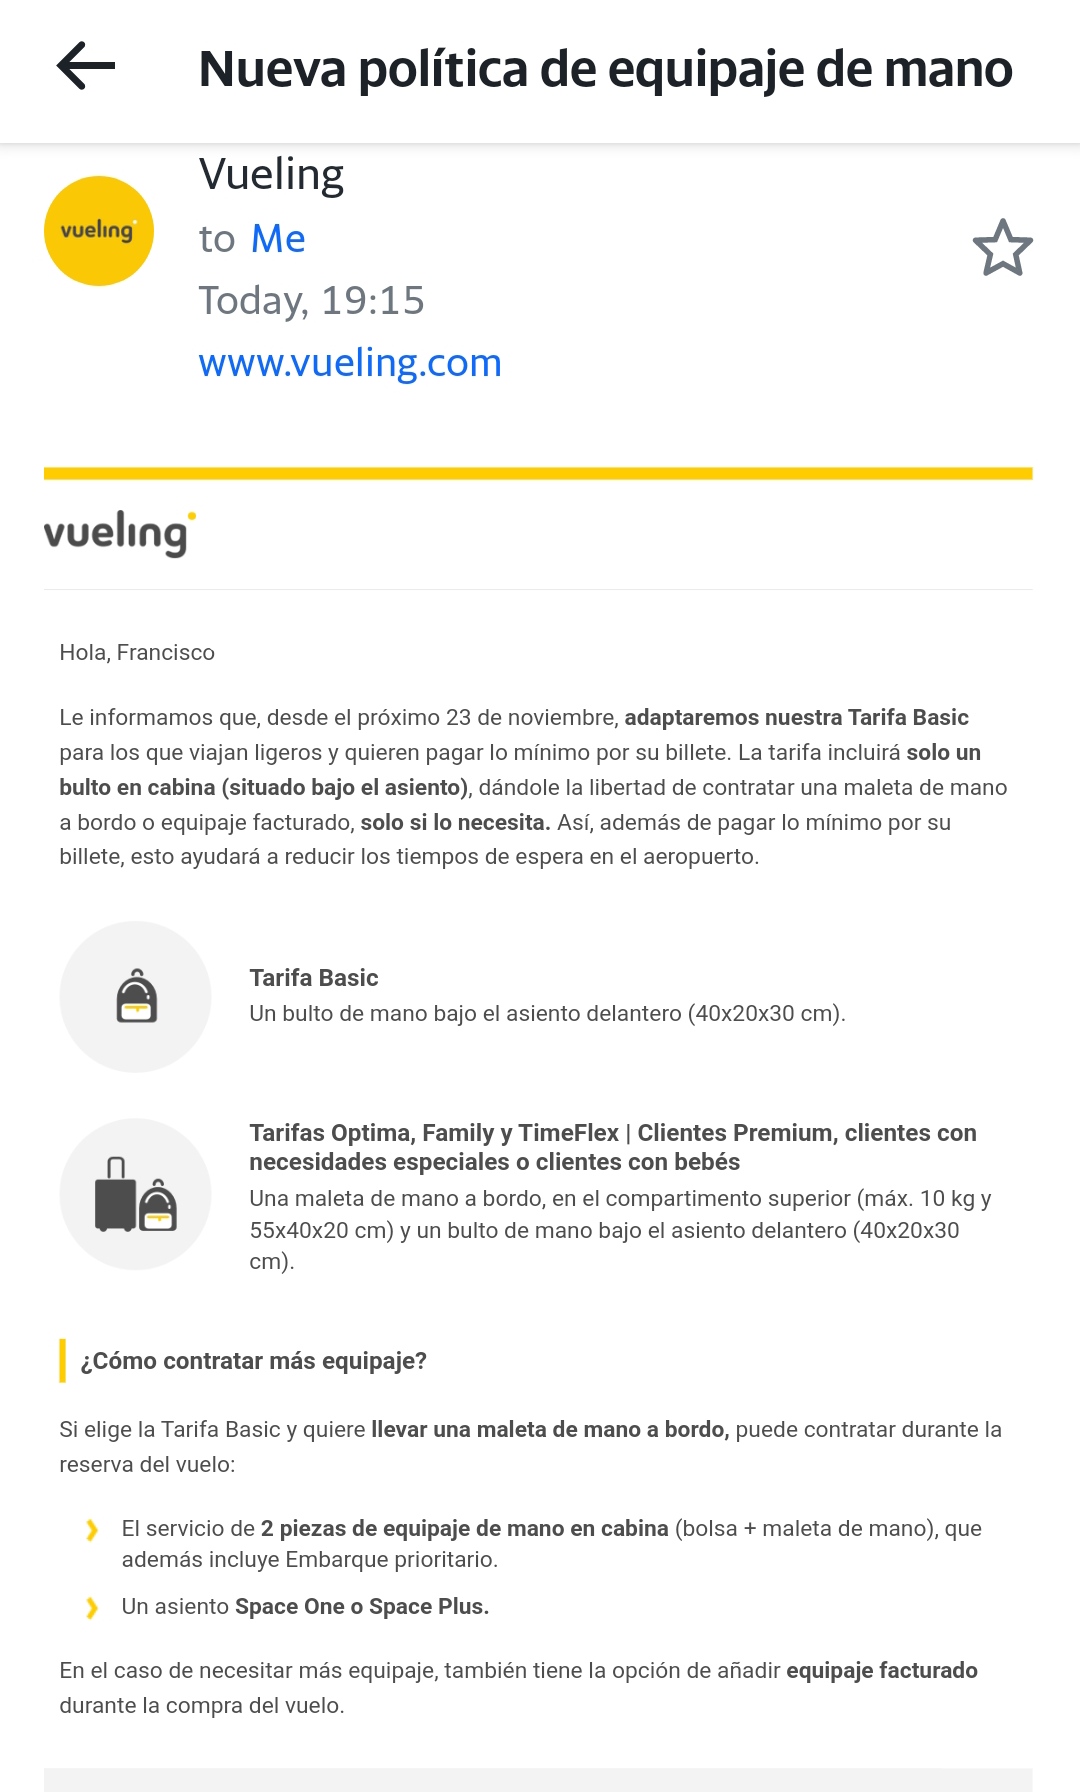 Vueling Airlines on Twitter: "@InmaculadaUrrea En caso de duda, puedes enviarnos el localizador de la reserva por privado y vemos. Quedamos a tu entera disposición. 2/2" Twitter